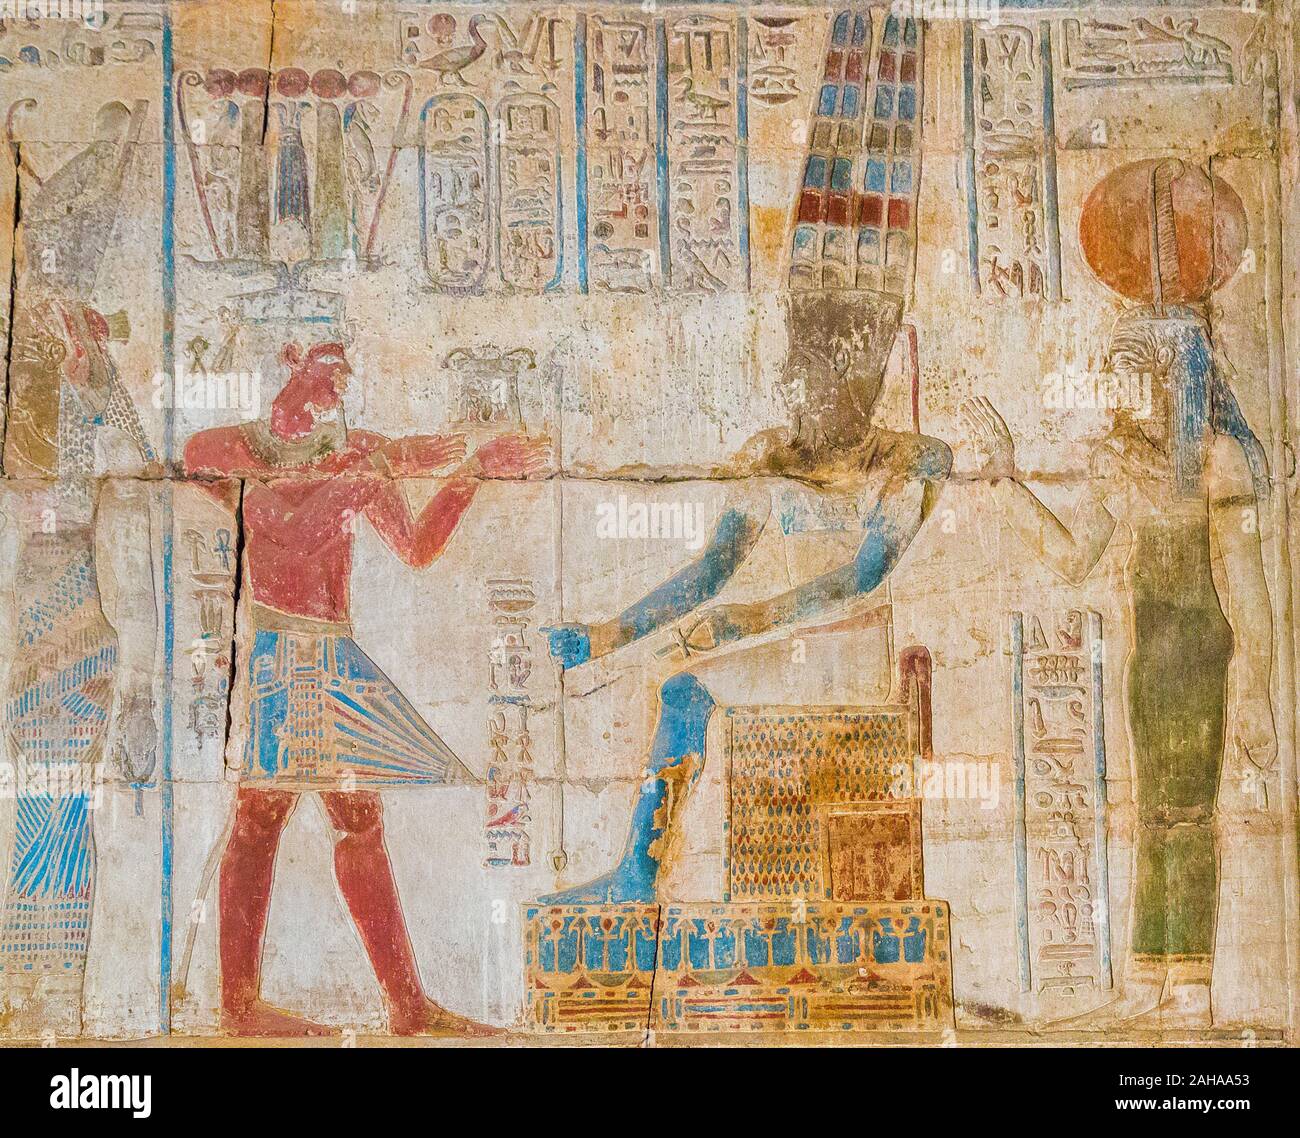 De Tebas en Egipto, sitio de Karnak, templo ptolemaico de Opet. El rey, llevaba una corona hemhem almidonada y un taparrabos, ofrece un pectoral a Dios Amun. Foto de stock